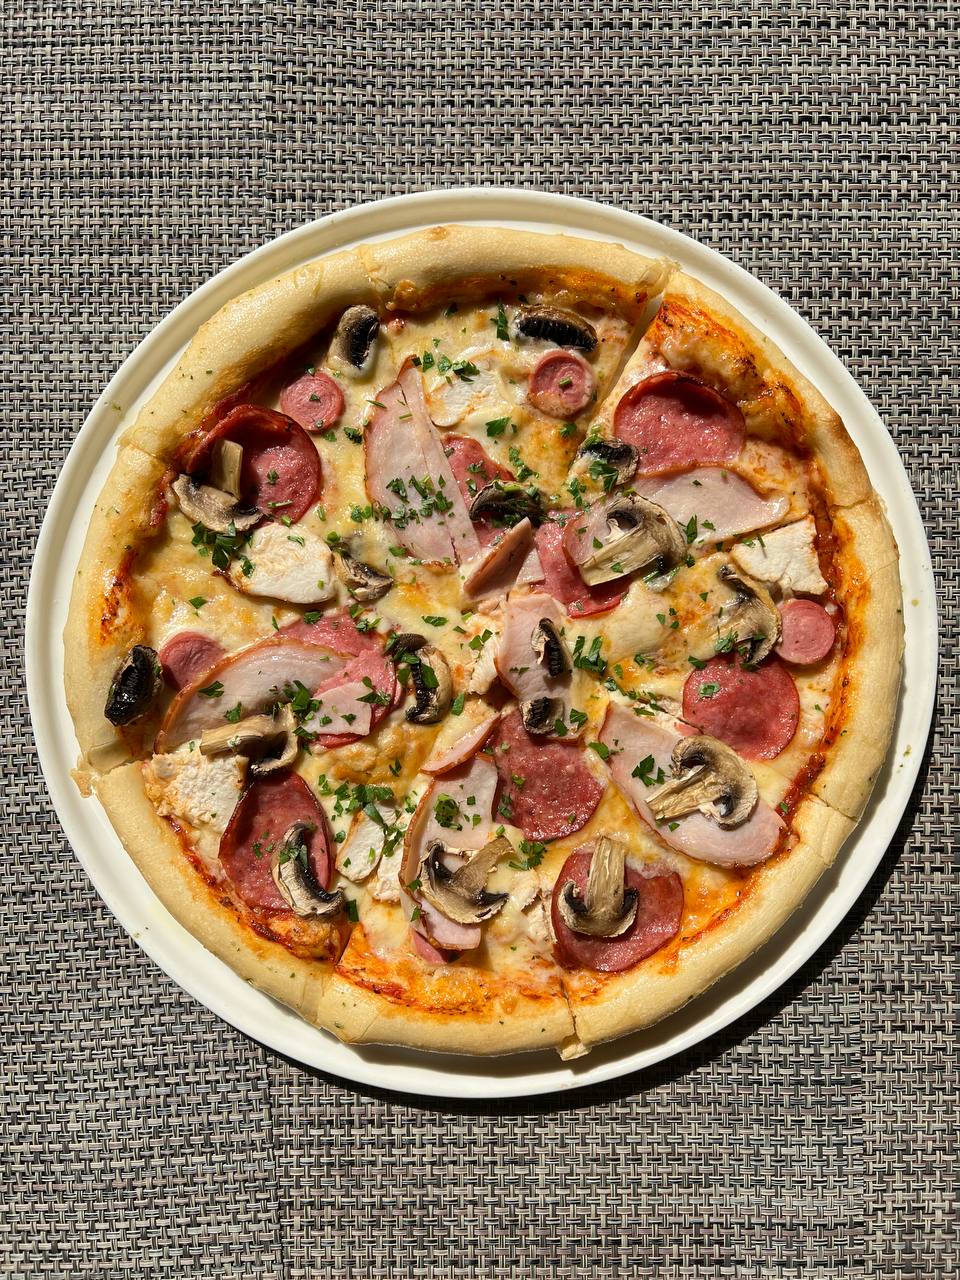 пицца мясная рецепт в домашних условиях в духовке пошаговый рецепт с фото фото 95